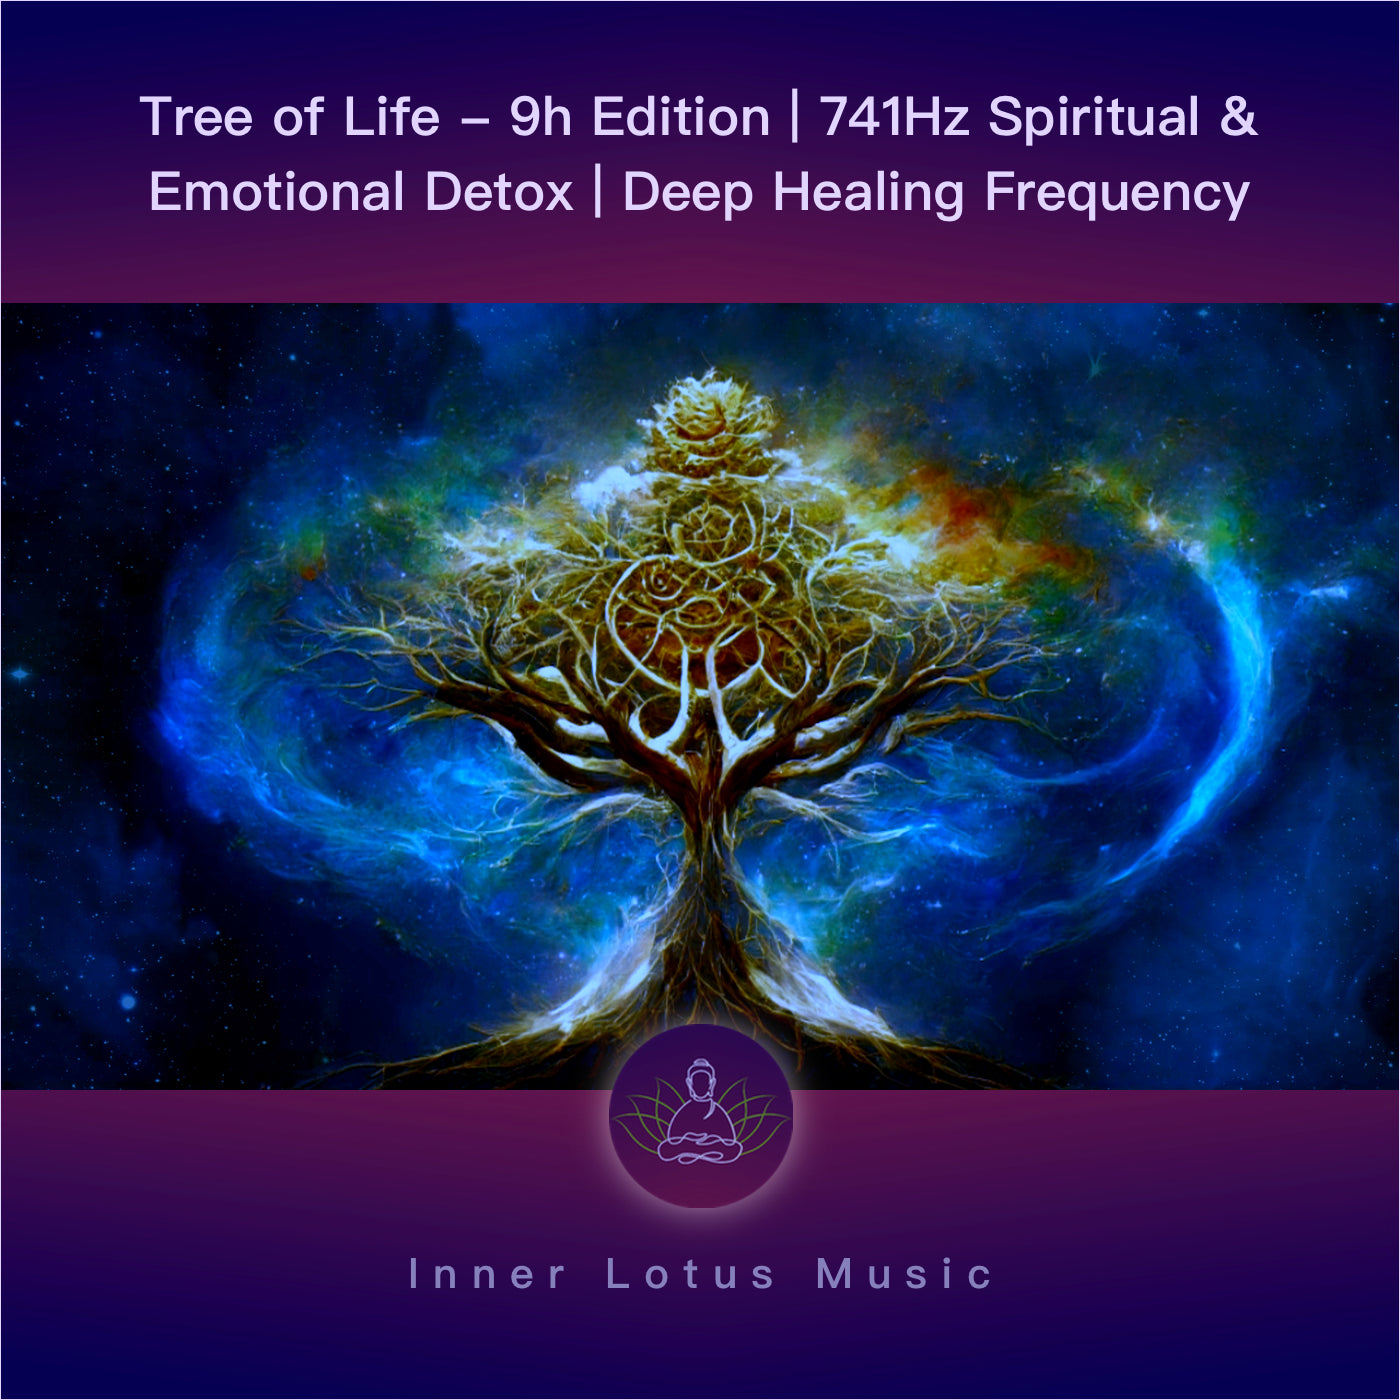 Árbol de la Vida - Edición 9h | 741Hz Detox Espiritual y Emocional | Purificación Energética